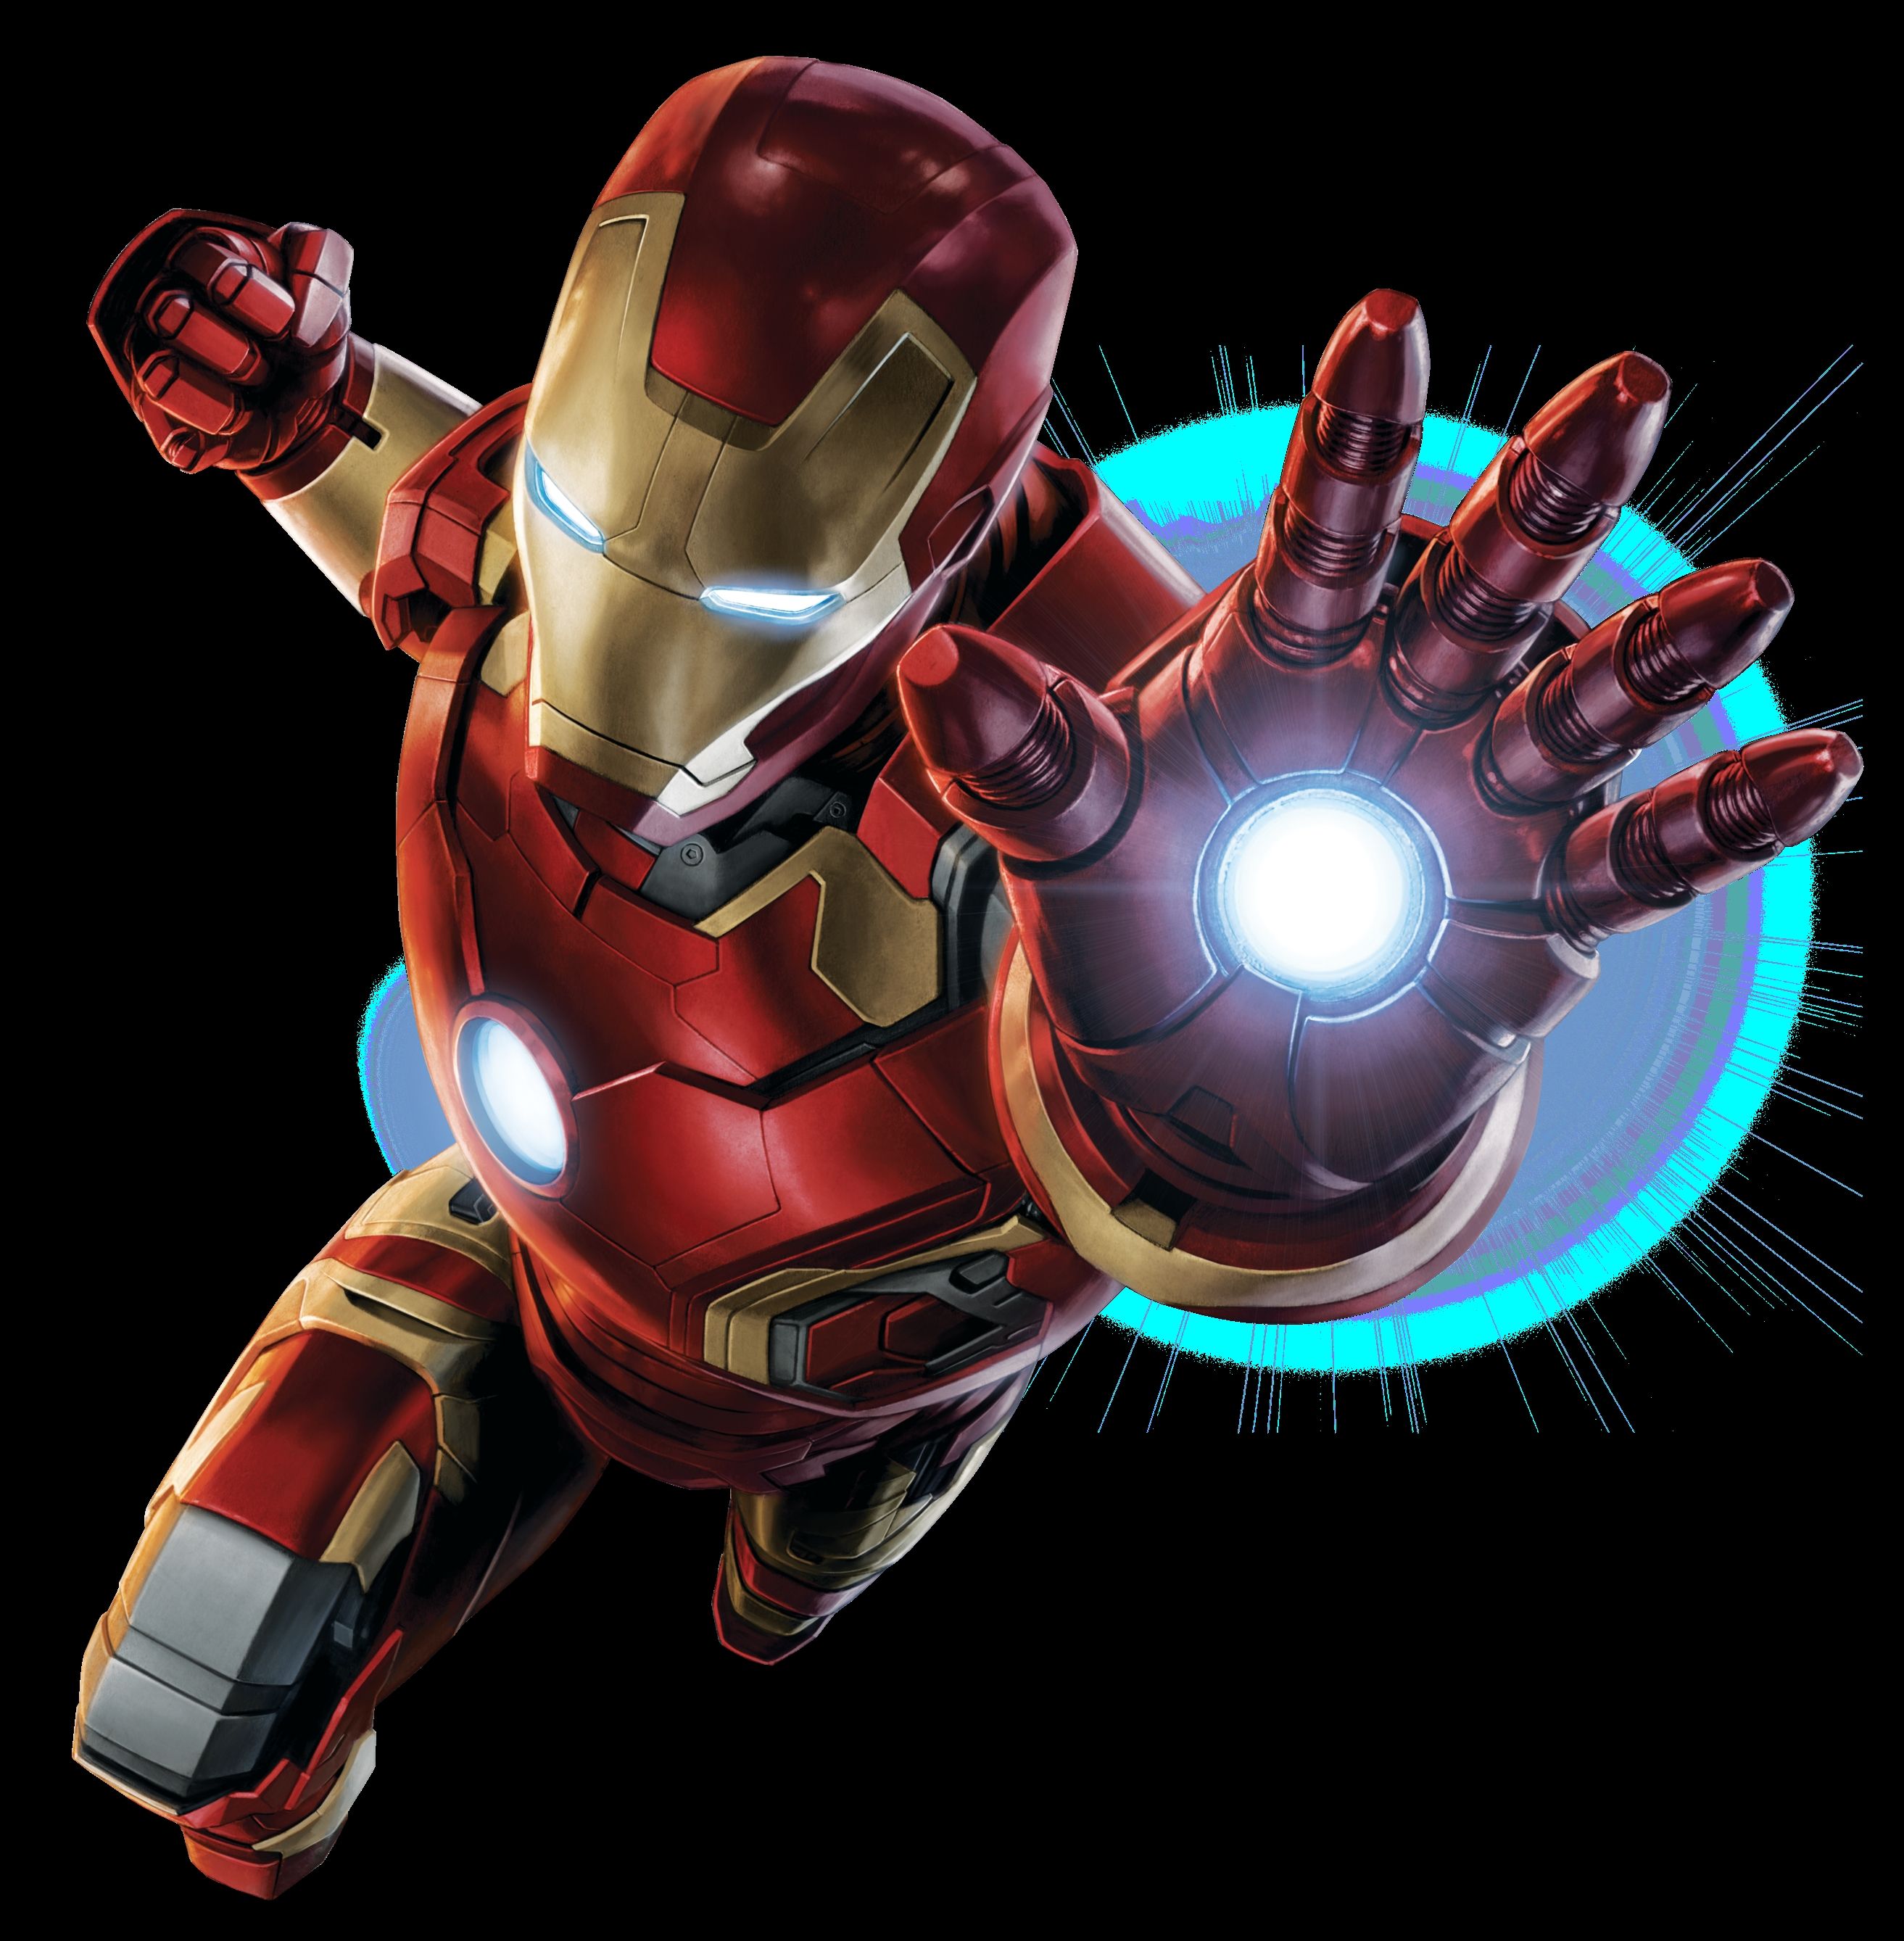 アイアンマンの3d壁紙,鉄人,スーパーヒーロー,架空の人物,ヒーロー,アベンジャーズ